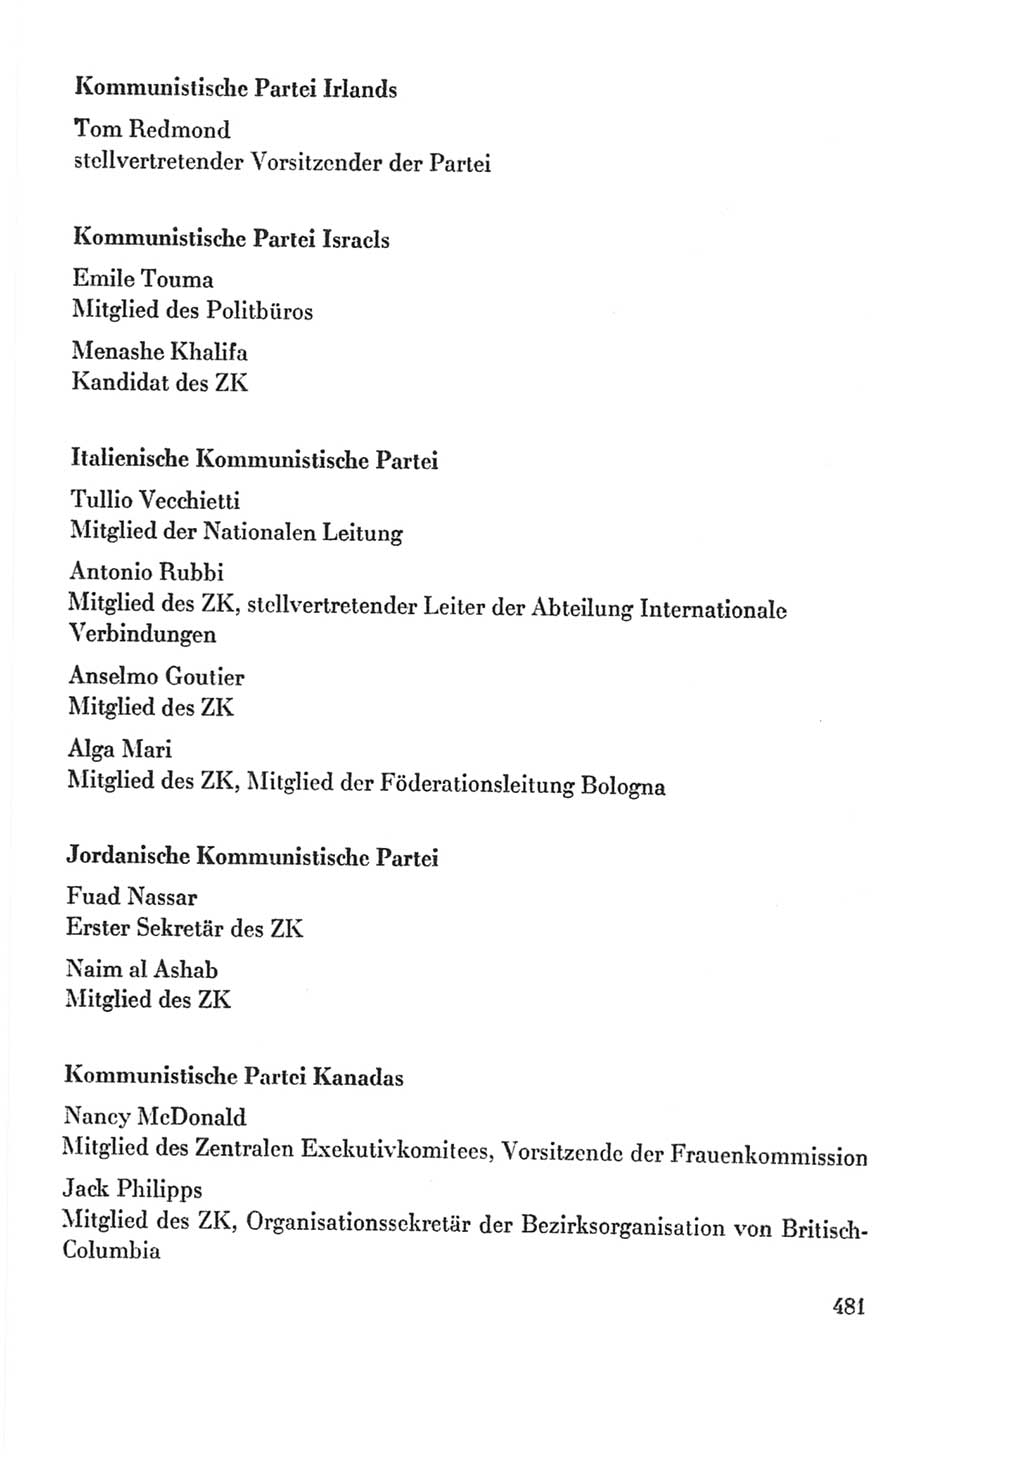 Protokoll der Verhandlungen des Ⅸ. Parteitages der Sozialistischen Einheitspartei Deutschlands (SED) [Deutsche Demokratische Republik (DDR)] 1976, Band 2, Seite 481 (Prot. Verh. Ⅸ. PT SED DDR 1976, Bd. 2, S. 481)